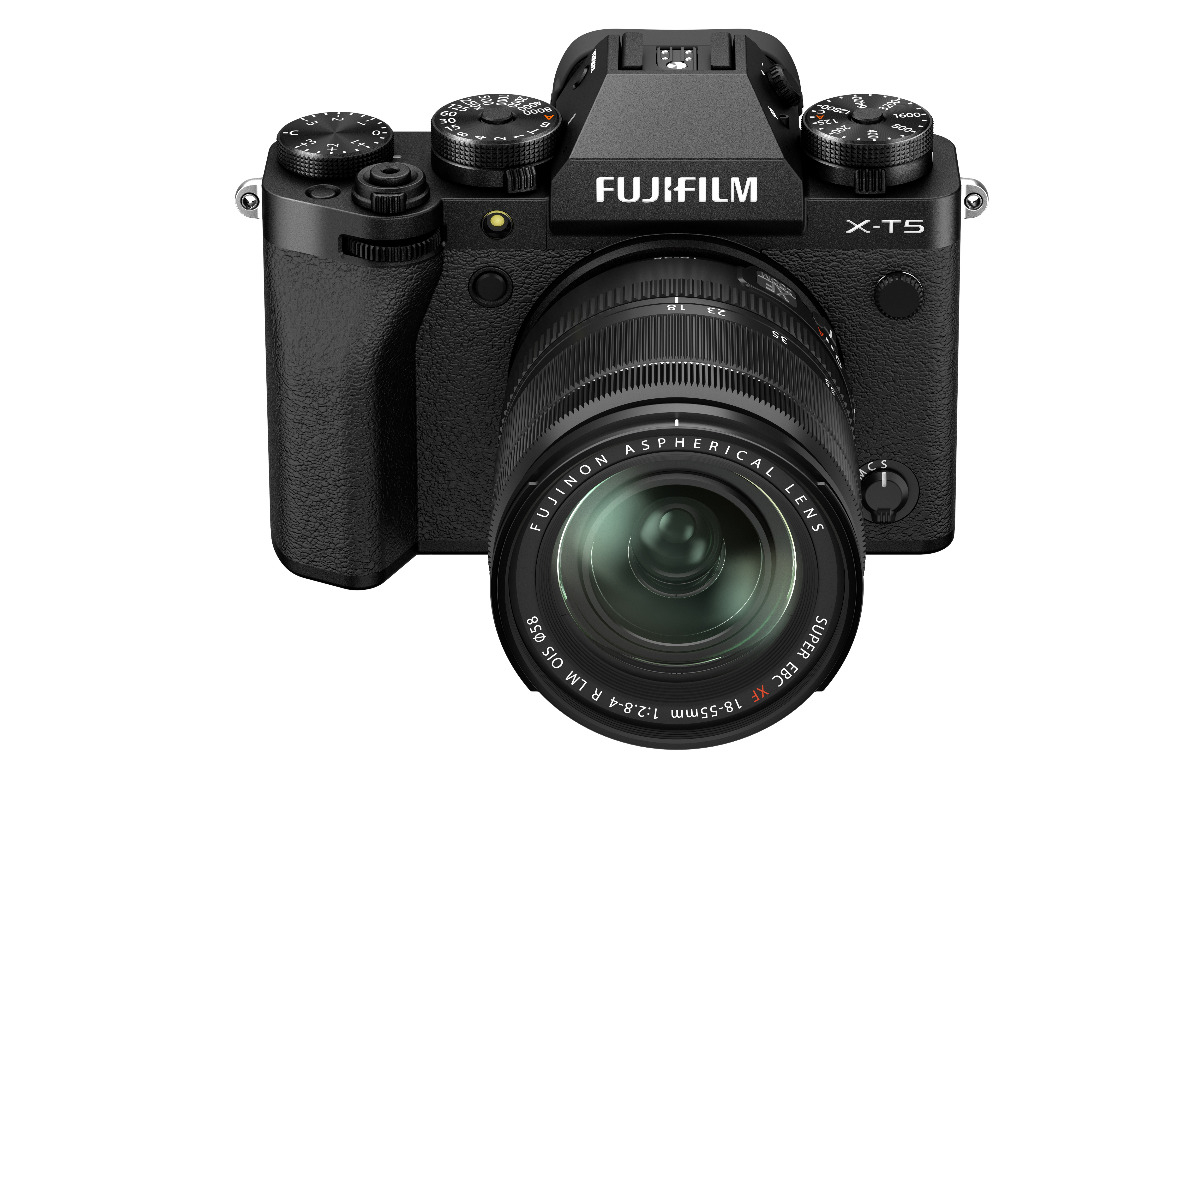 Dodd Camera - Fujifilm X-T5 with XF 18-55mm F2.8-4 R LM OIS Lens